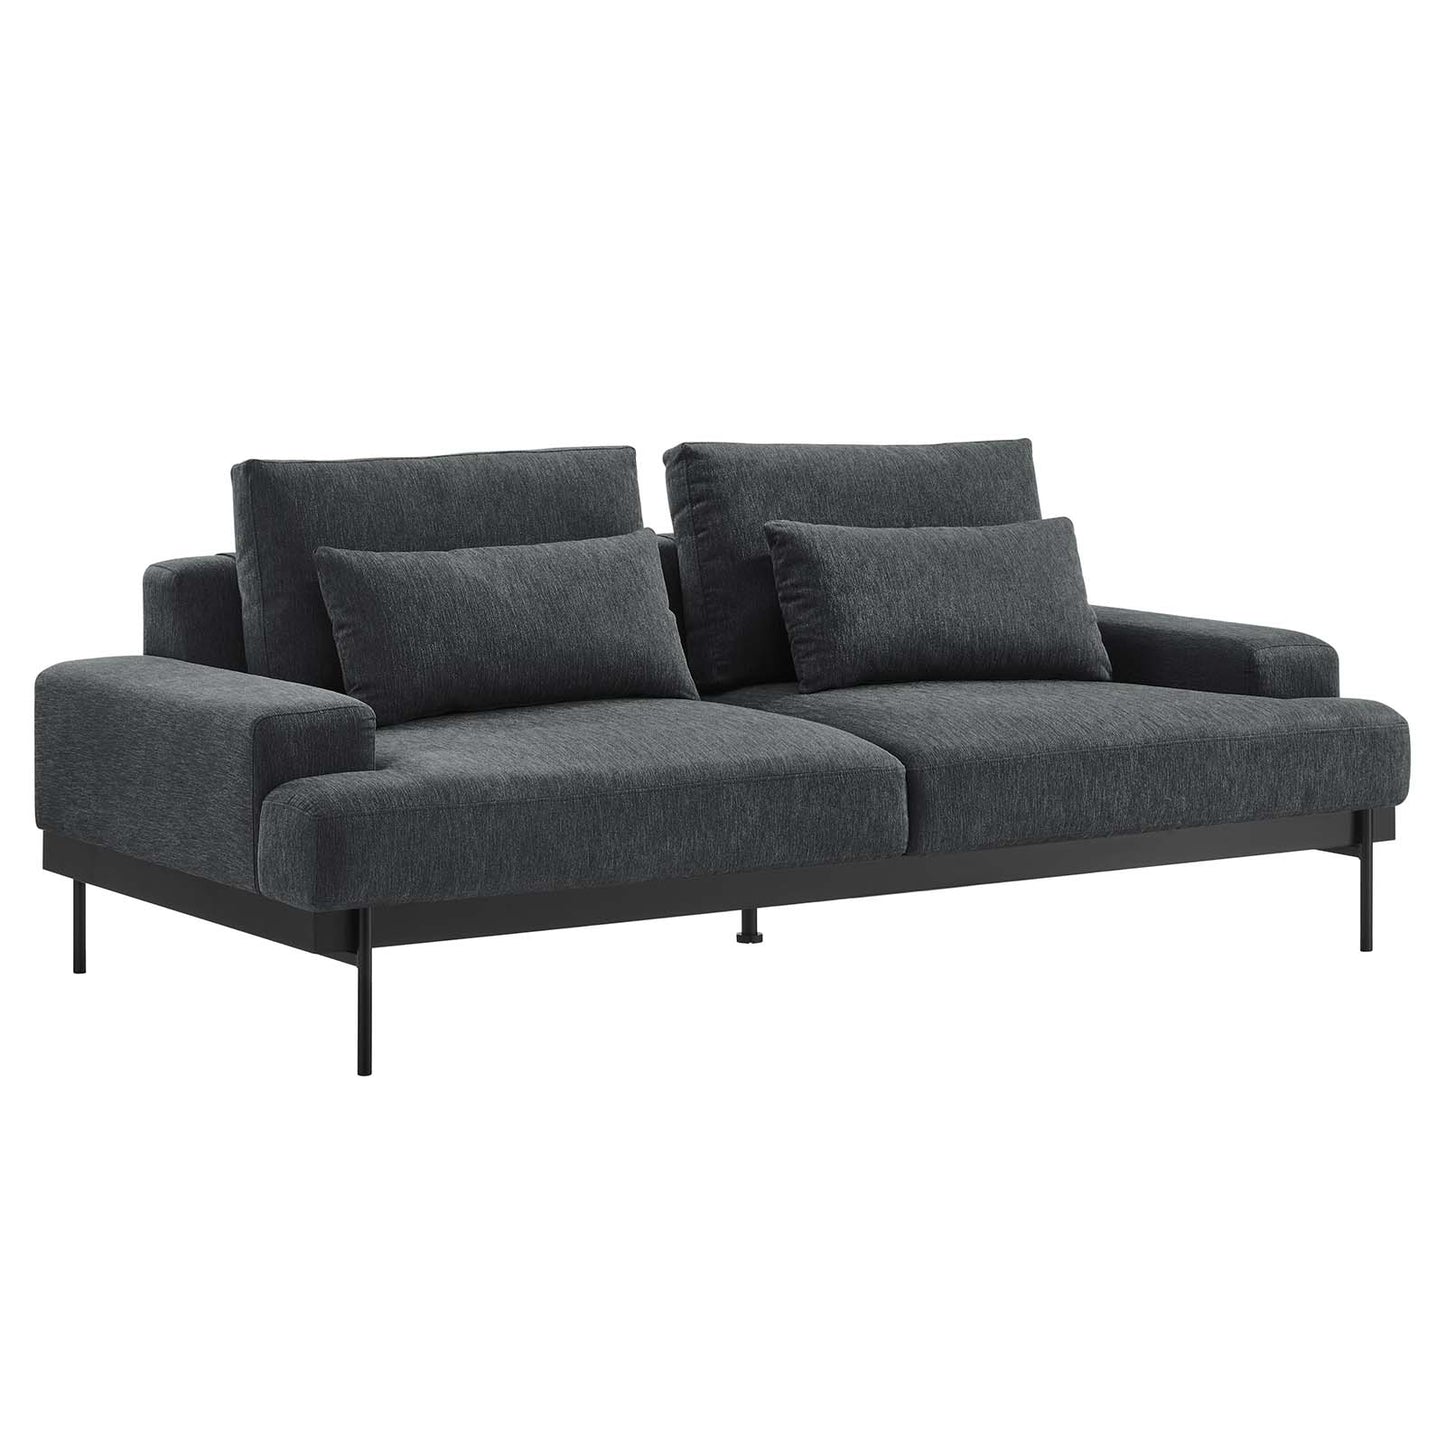 Proximity Upholstered Fabric Sofa Charcoal EEI-6214-CHA